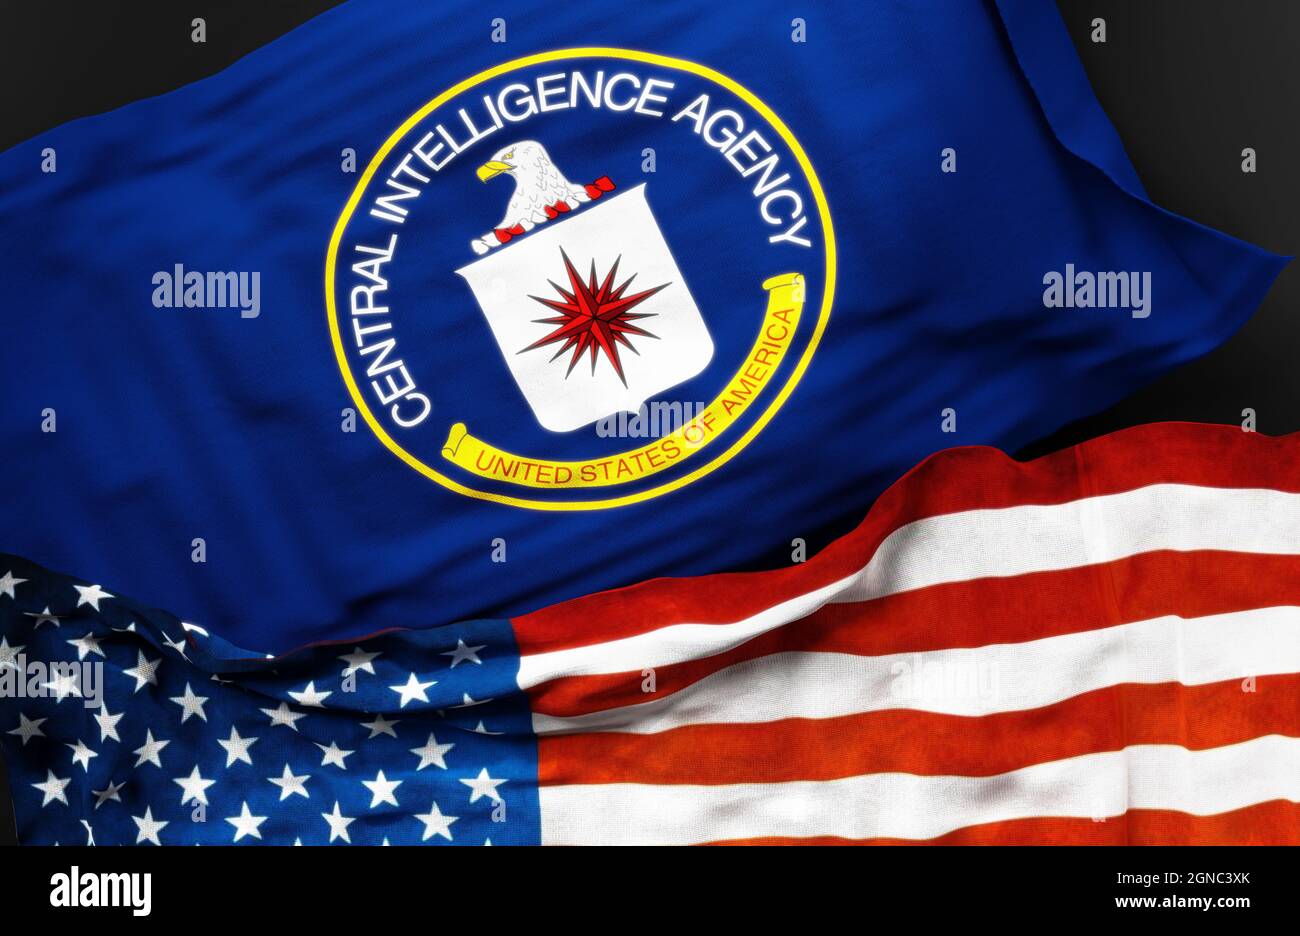 Drapeau de la Central Intelligence Agency des États-Unis avec un drapeau des États-Unis d'Amérique comme un symbole d'unité entre eux, illustration 3d Banque D'Images